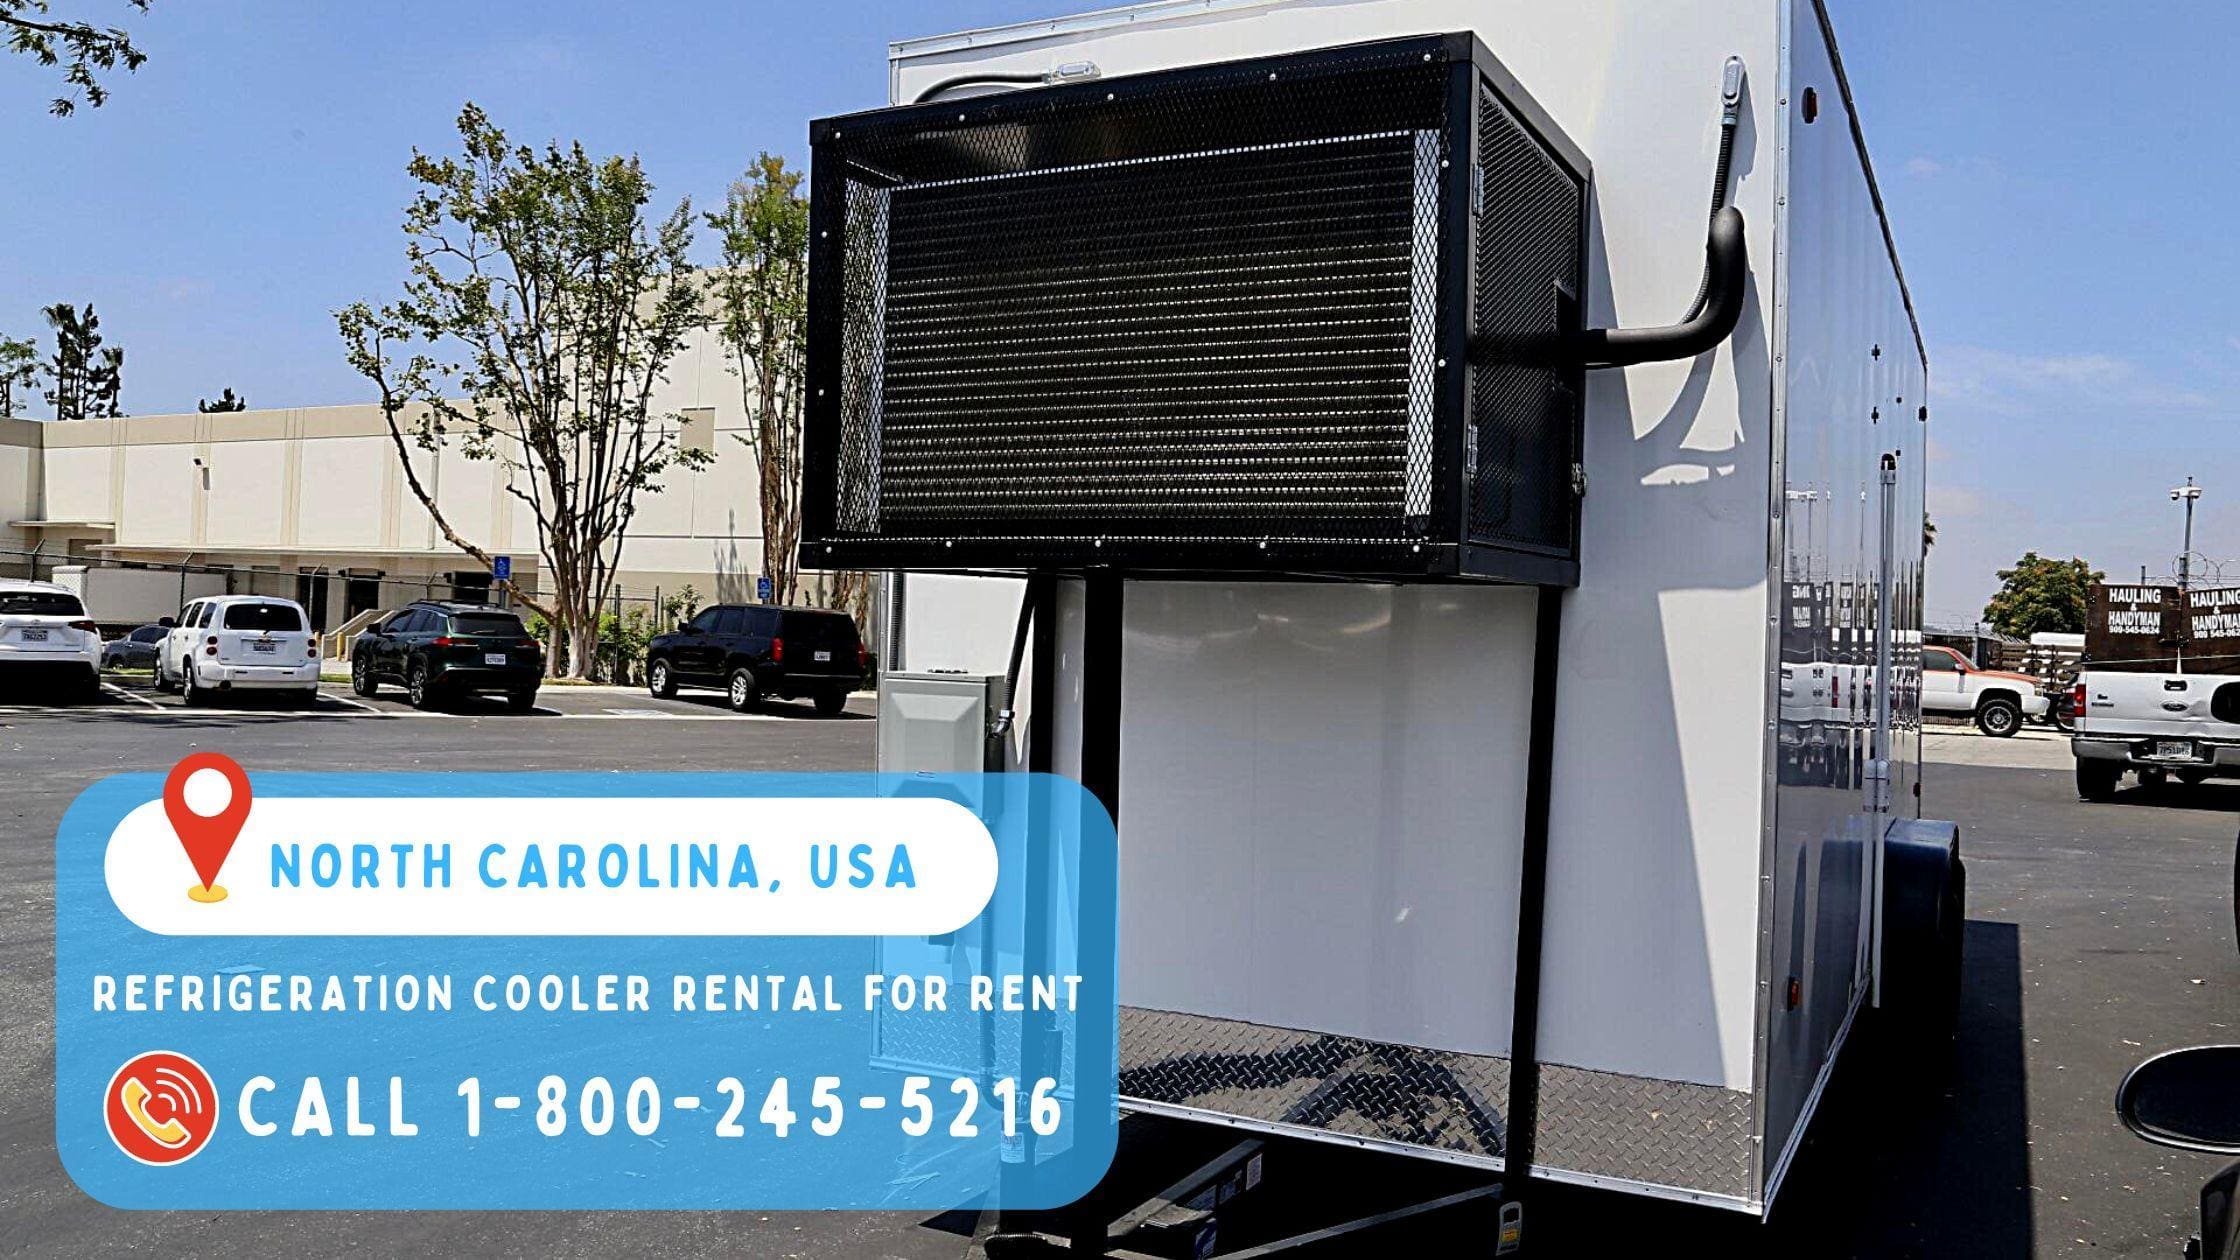 Refrigeration Cooler Rental for rent in North Carolina